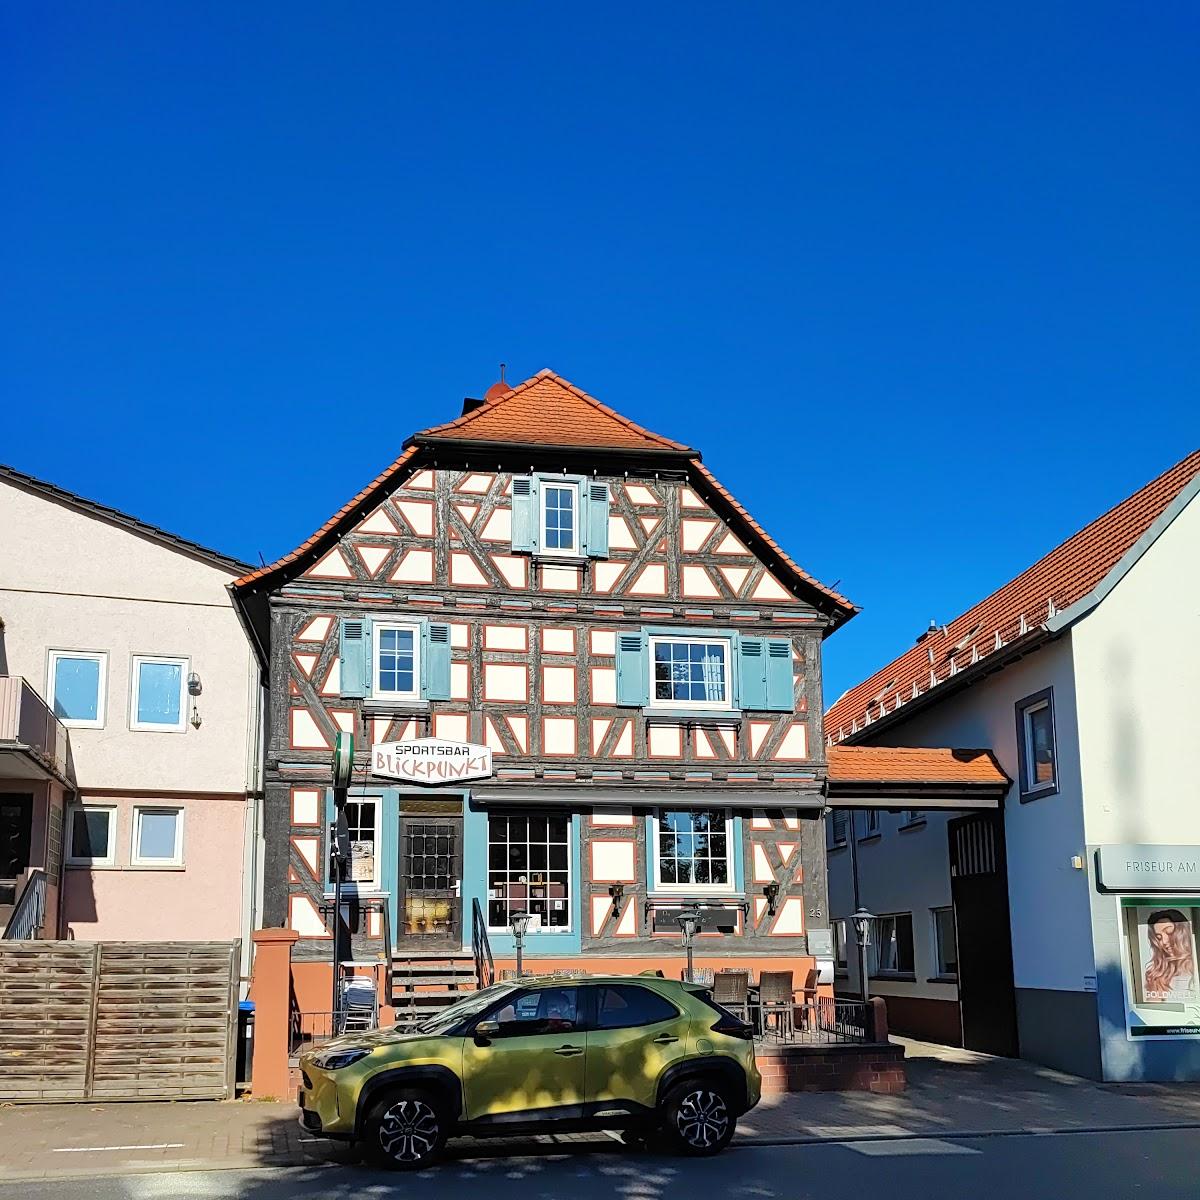 Restaurant "Sportsbar Blickpunkt" in Groß-Bieberau